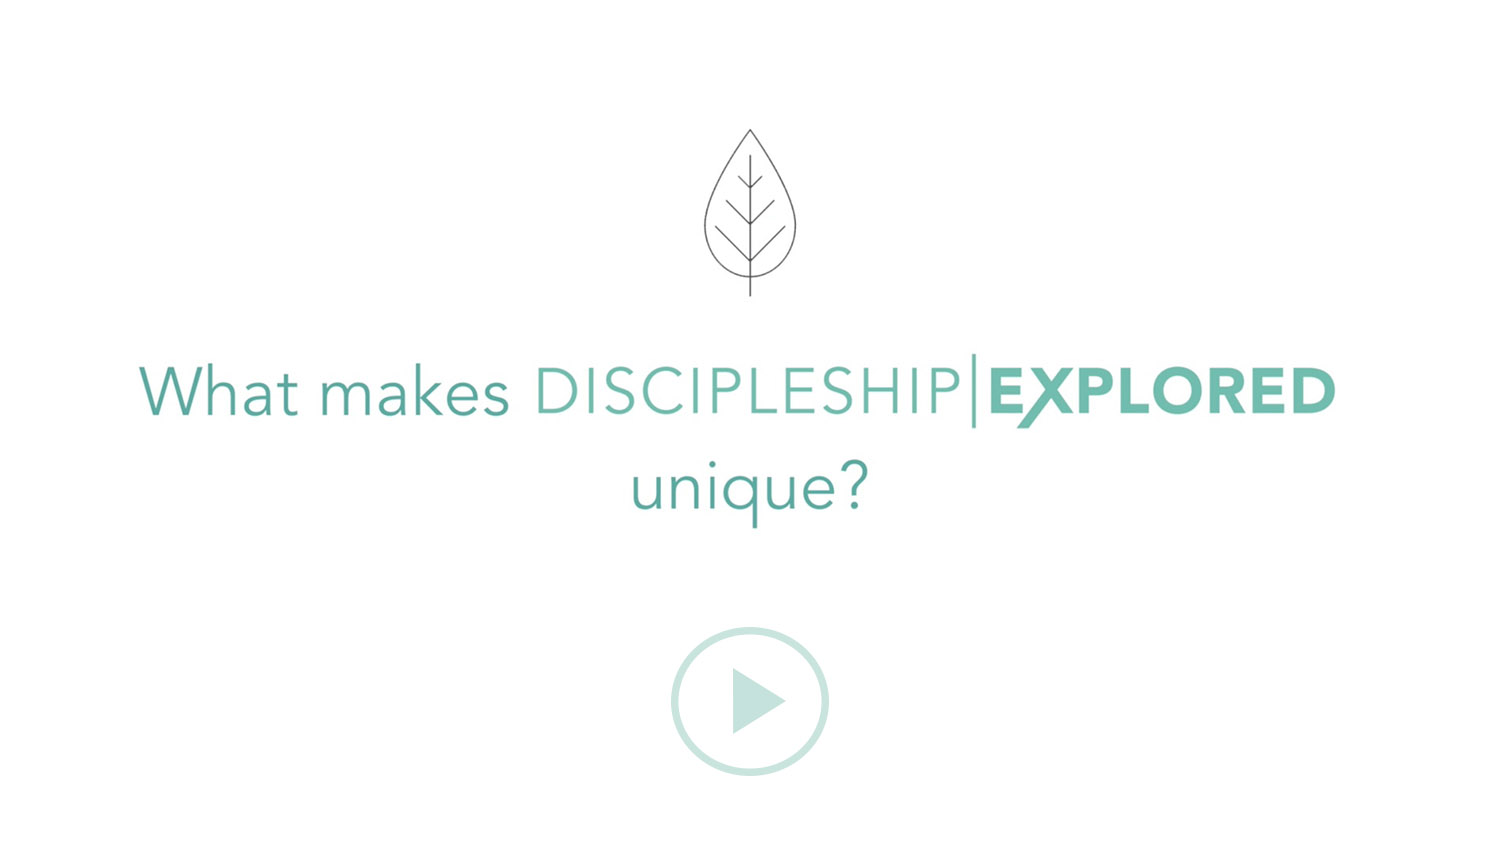 Question 2*What makes Discipleship Explored unique?